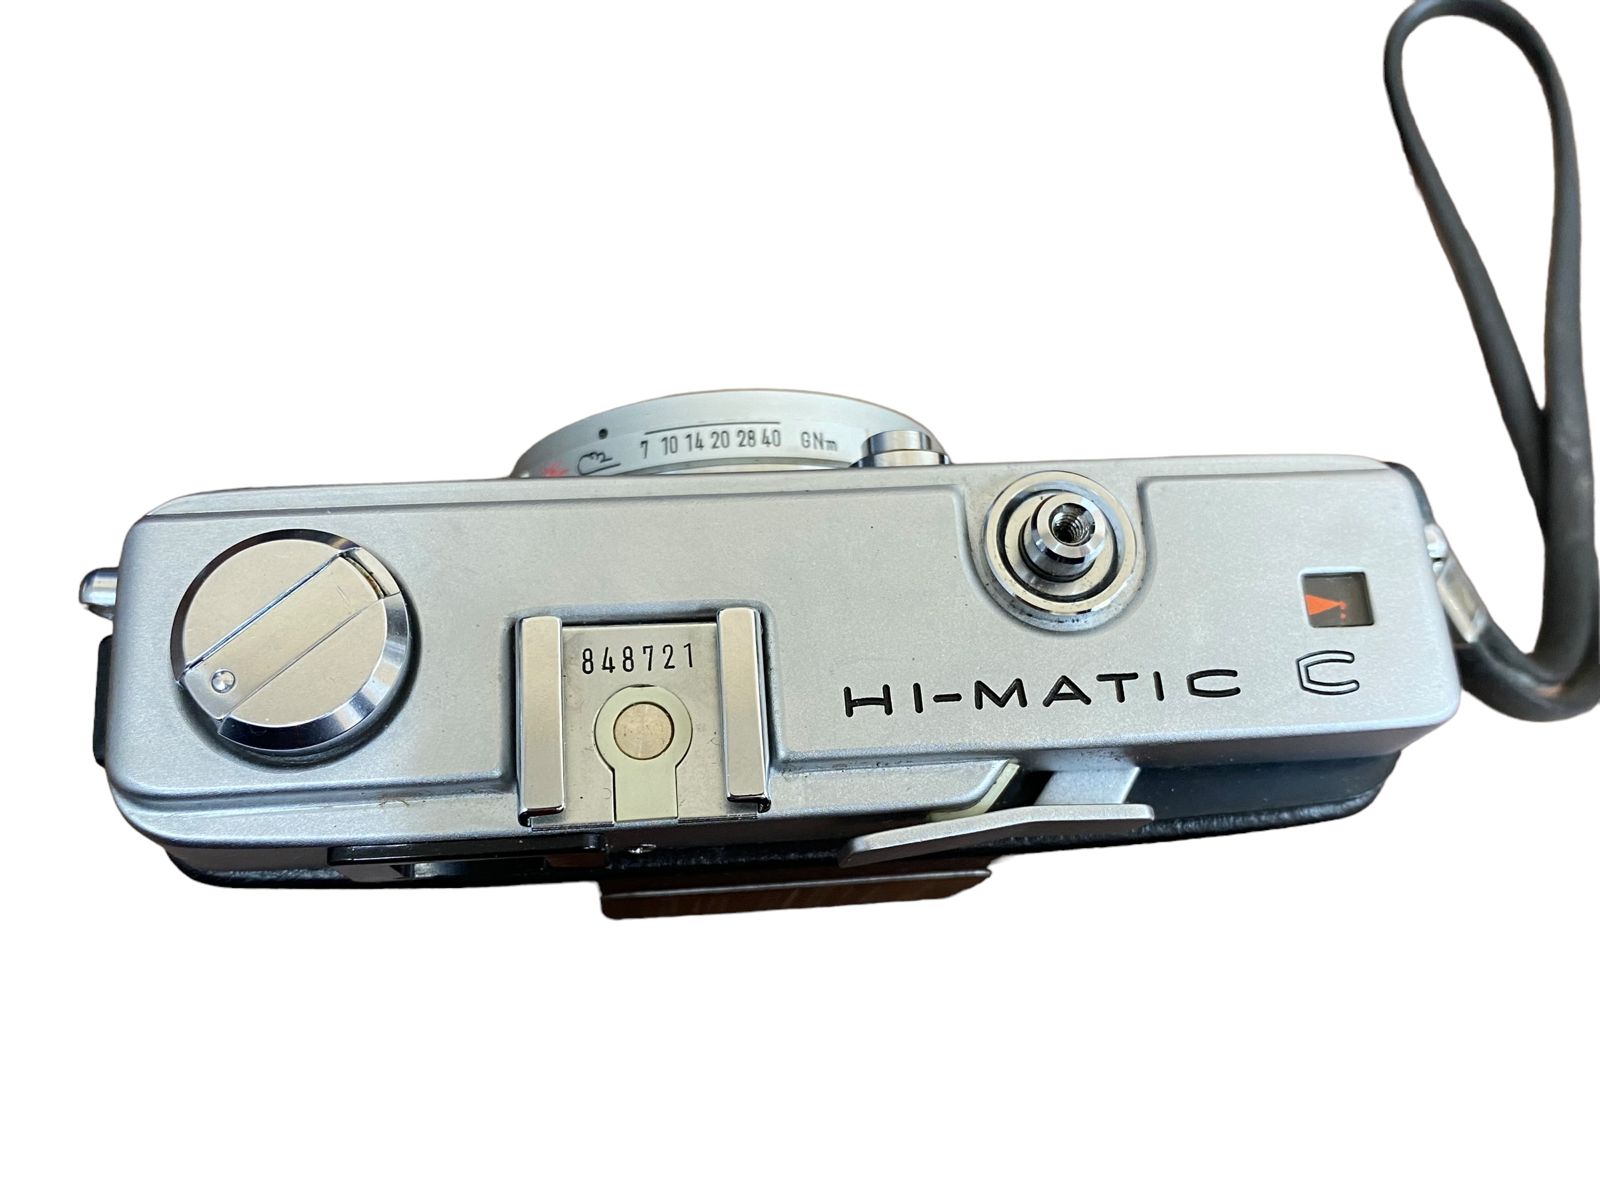 minolta HI-MATIC C ミノルタ ハイマチック C ジャンク - フィルムカメラ